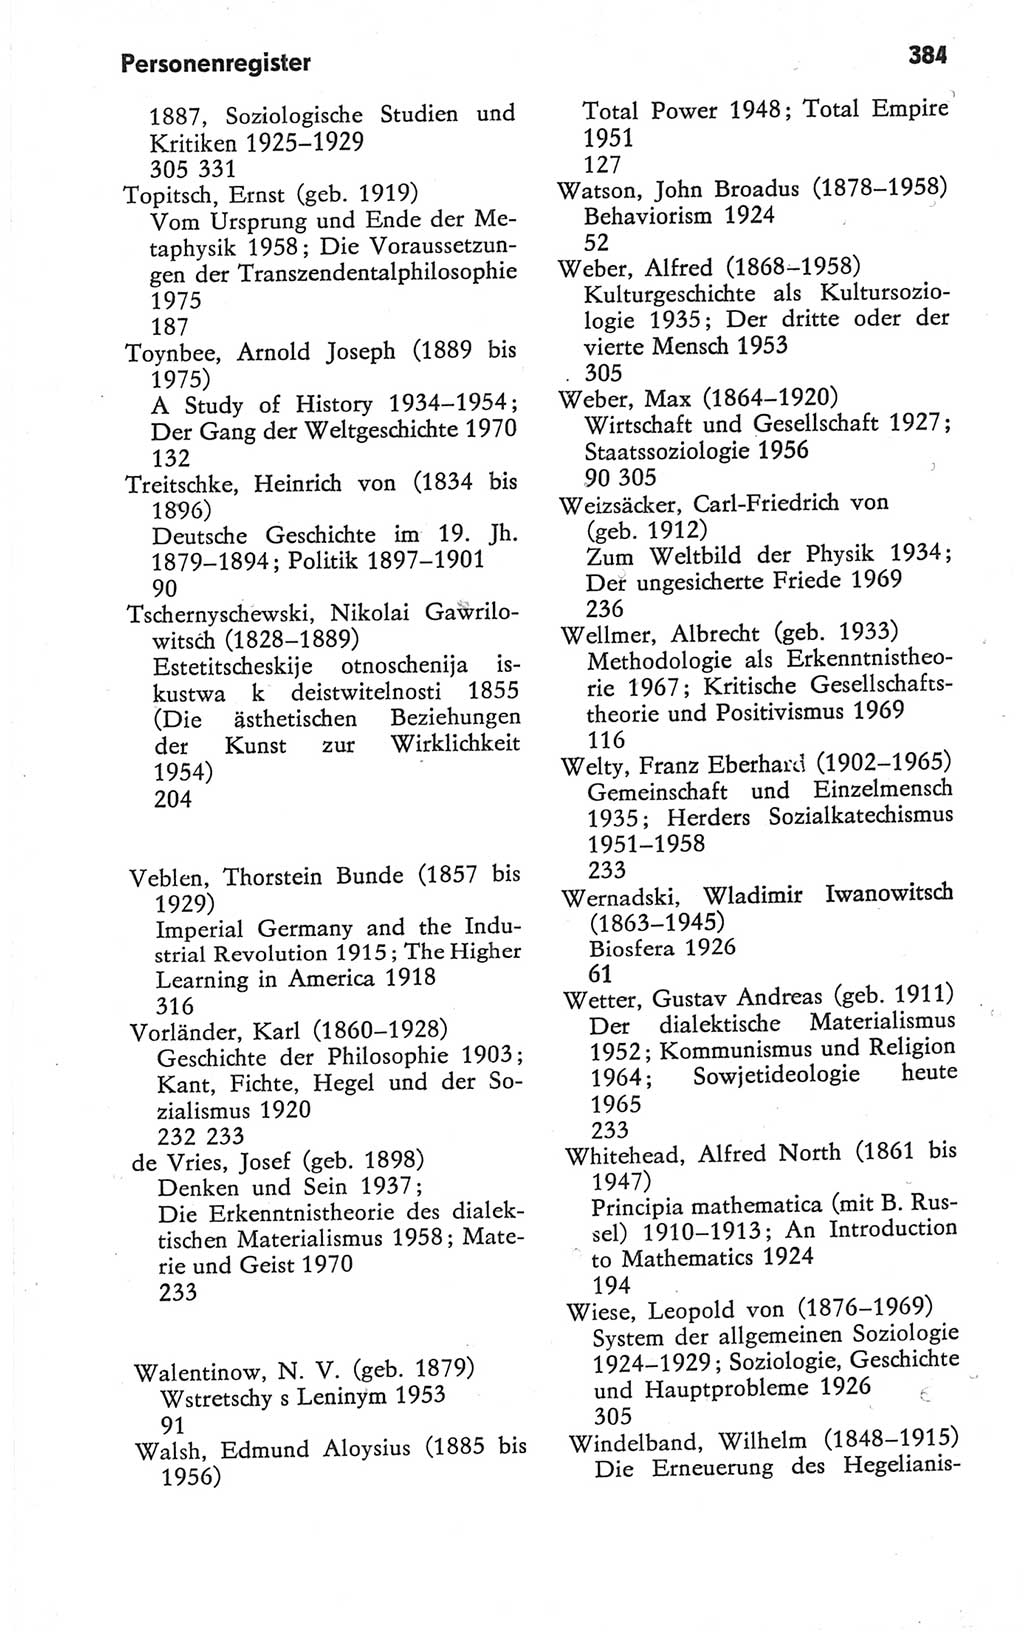 Kleines Wörterbuch der marxistisch-leninistischen Philosophie [Deutsche Demokratische Republik (DDR)] 1979, Seite 384 (Kl. Wb. ML Phil. DDR 1979, S. 384)